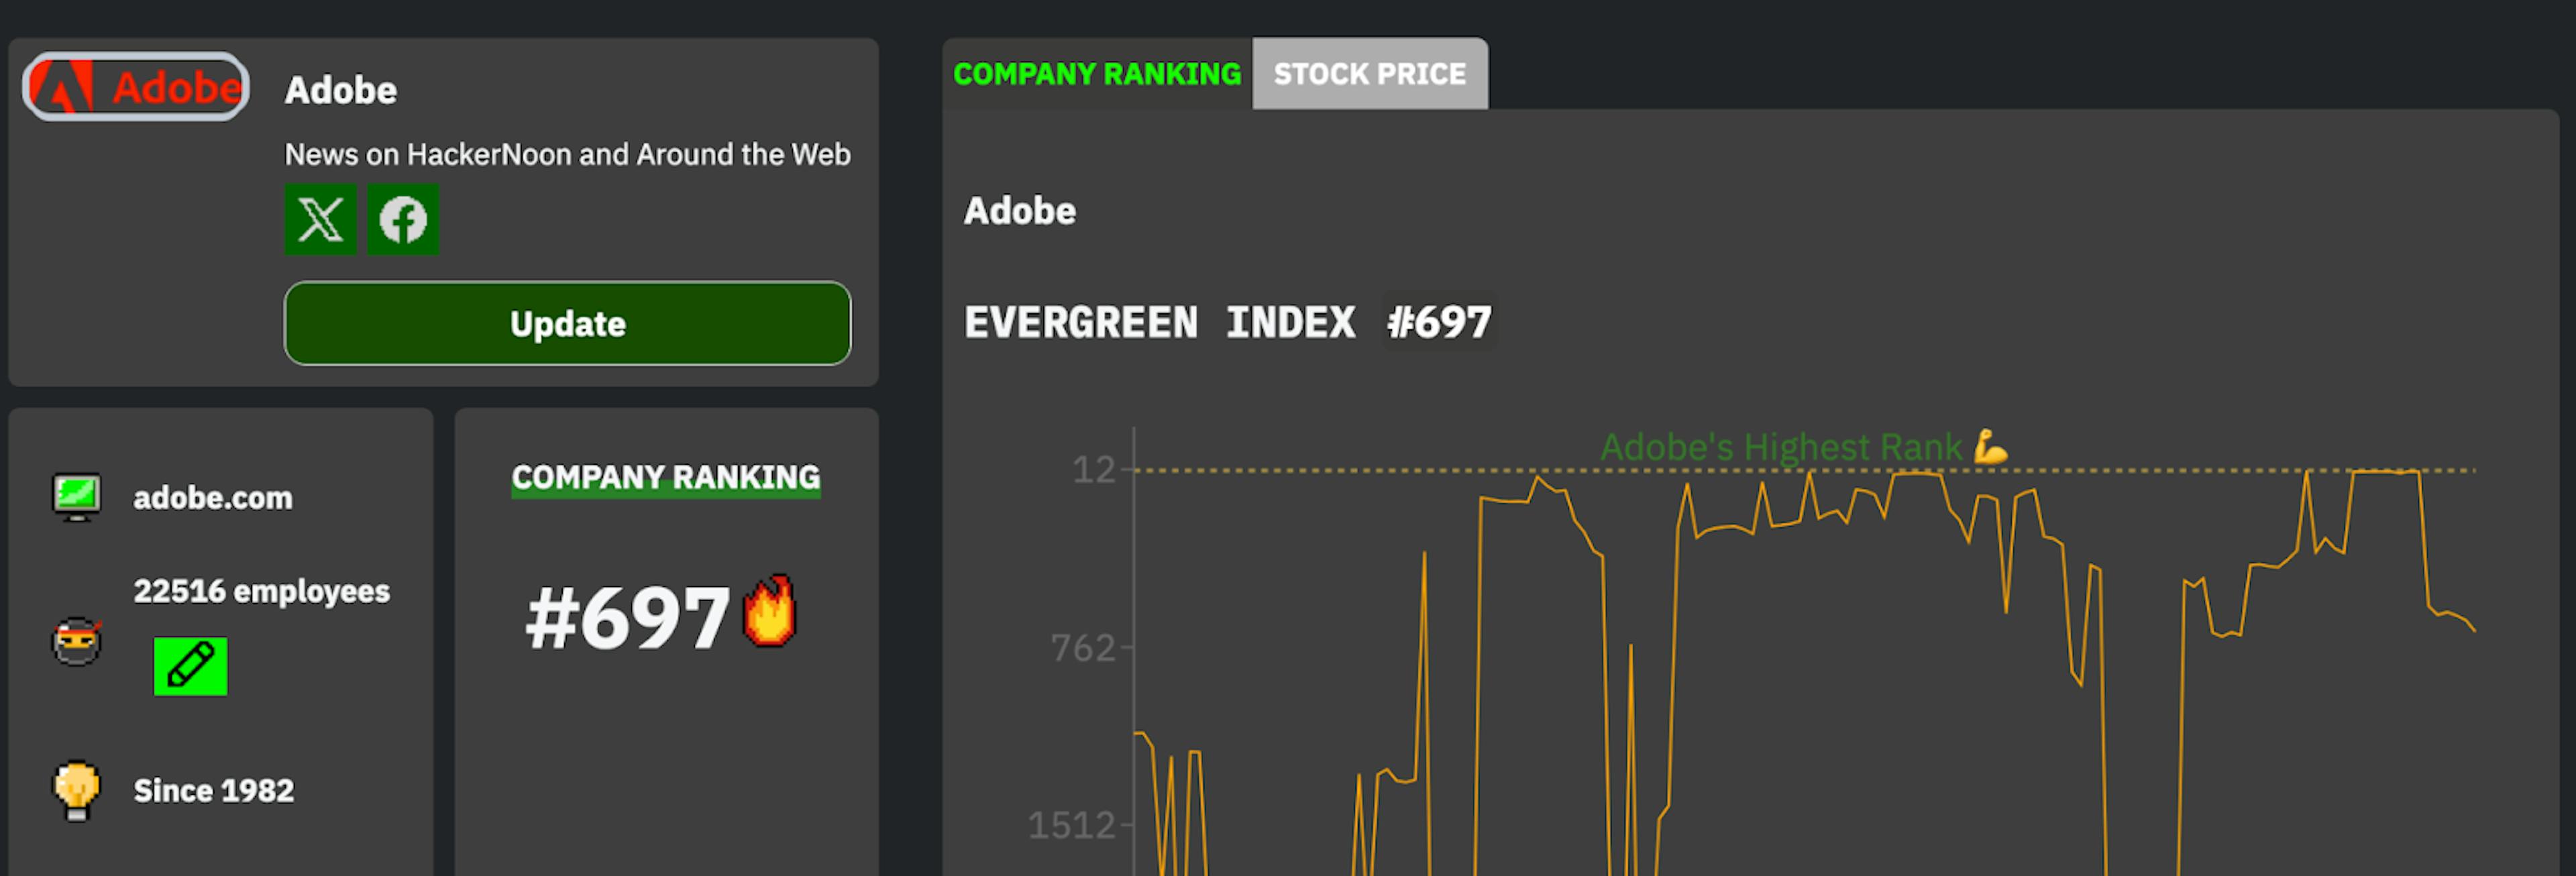 Adobe's Tech company ranking